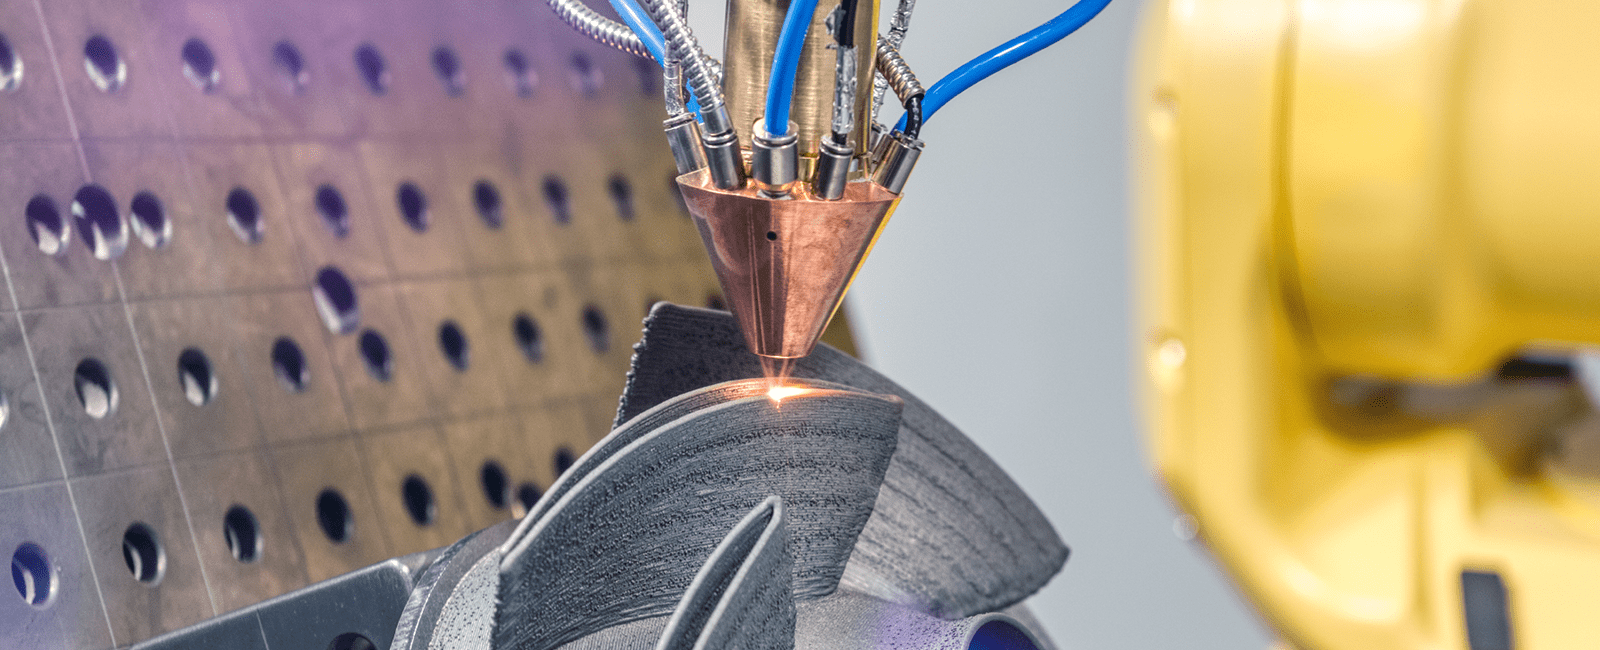 Symbolbild für Fertigungsverfahren mit dem Fokus auf einem 3D-Drucker während der Fertigung © Adobe Stock: nordroden 